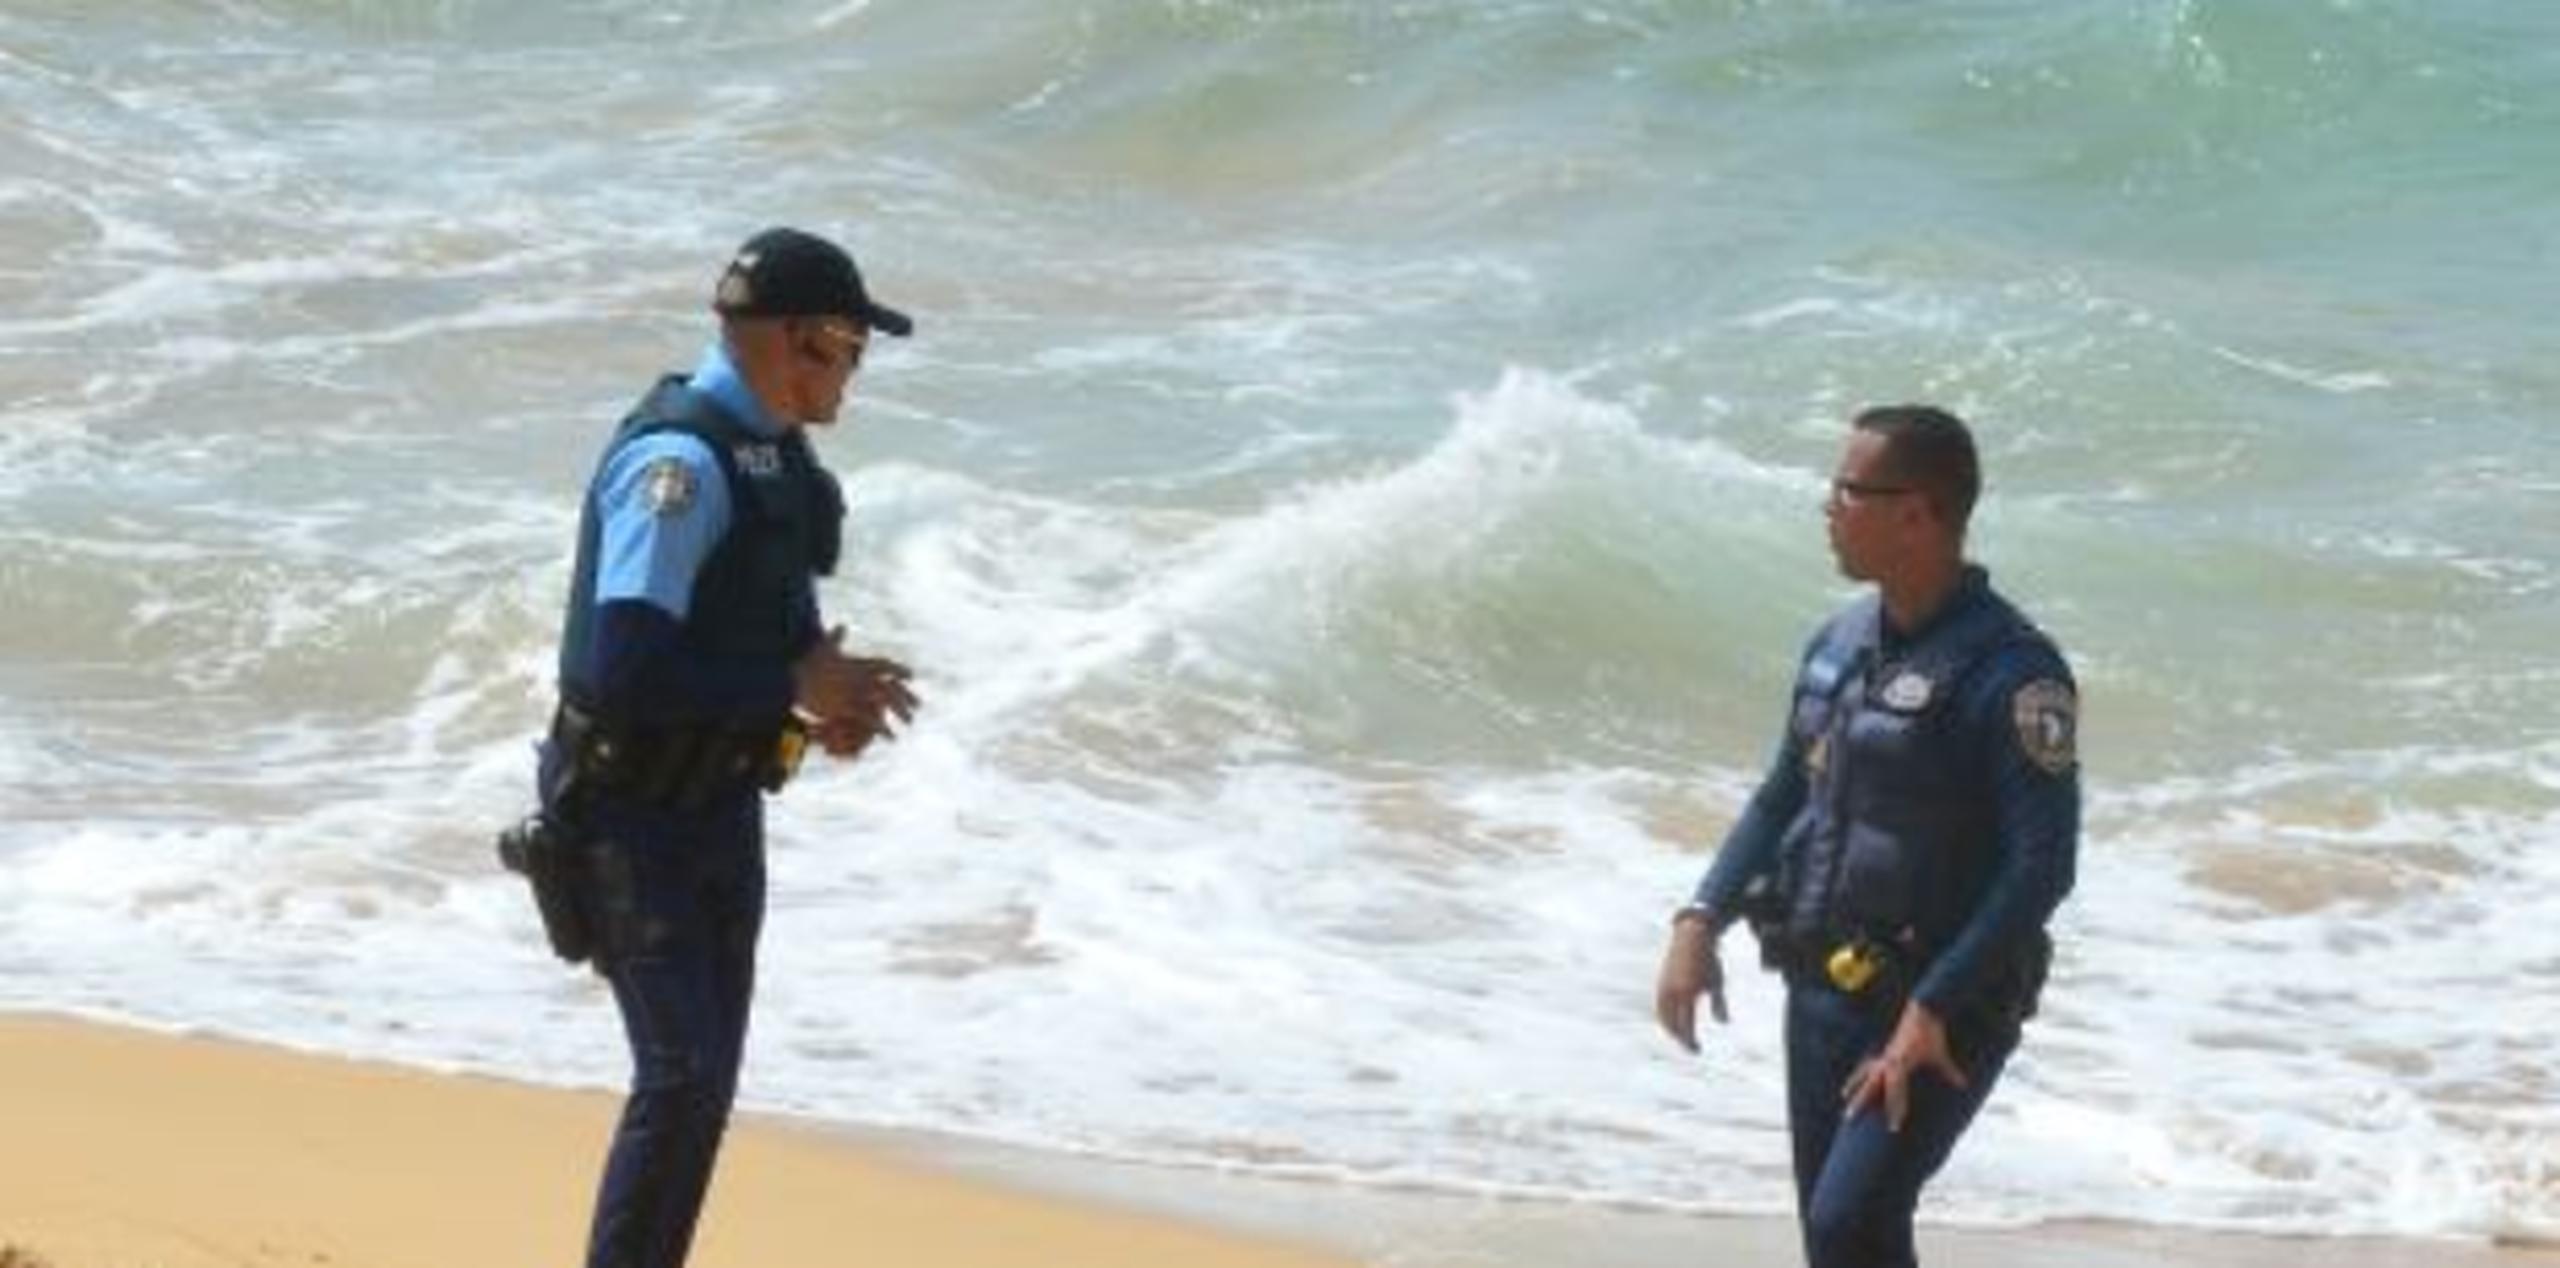 El niño Steven Yomar Delgado, de 8 años fue encontrado flotando en la playa a eso de las 12:45 p.m. de ayer y a su hermanito en la orilla. (luis.alcaladelolmo@gfrmedia.com)